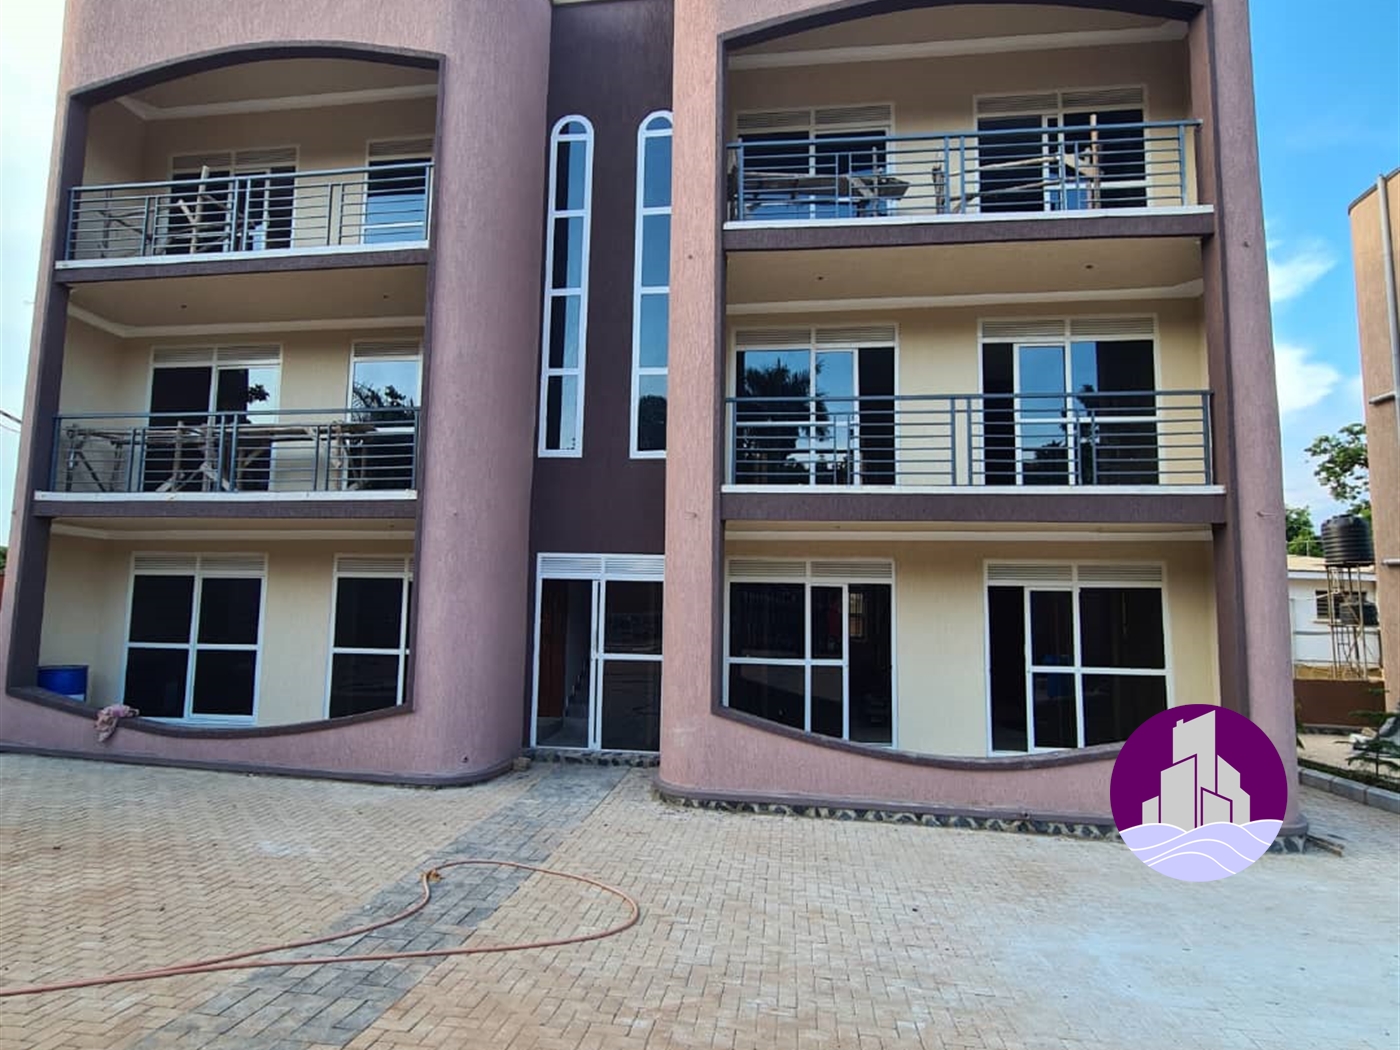 Apartment block for sale in Muyenga Kampala